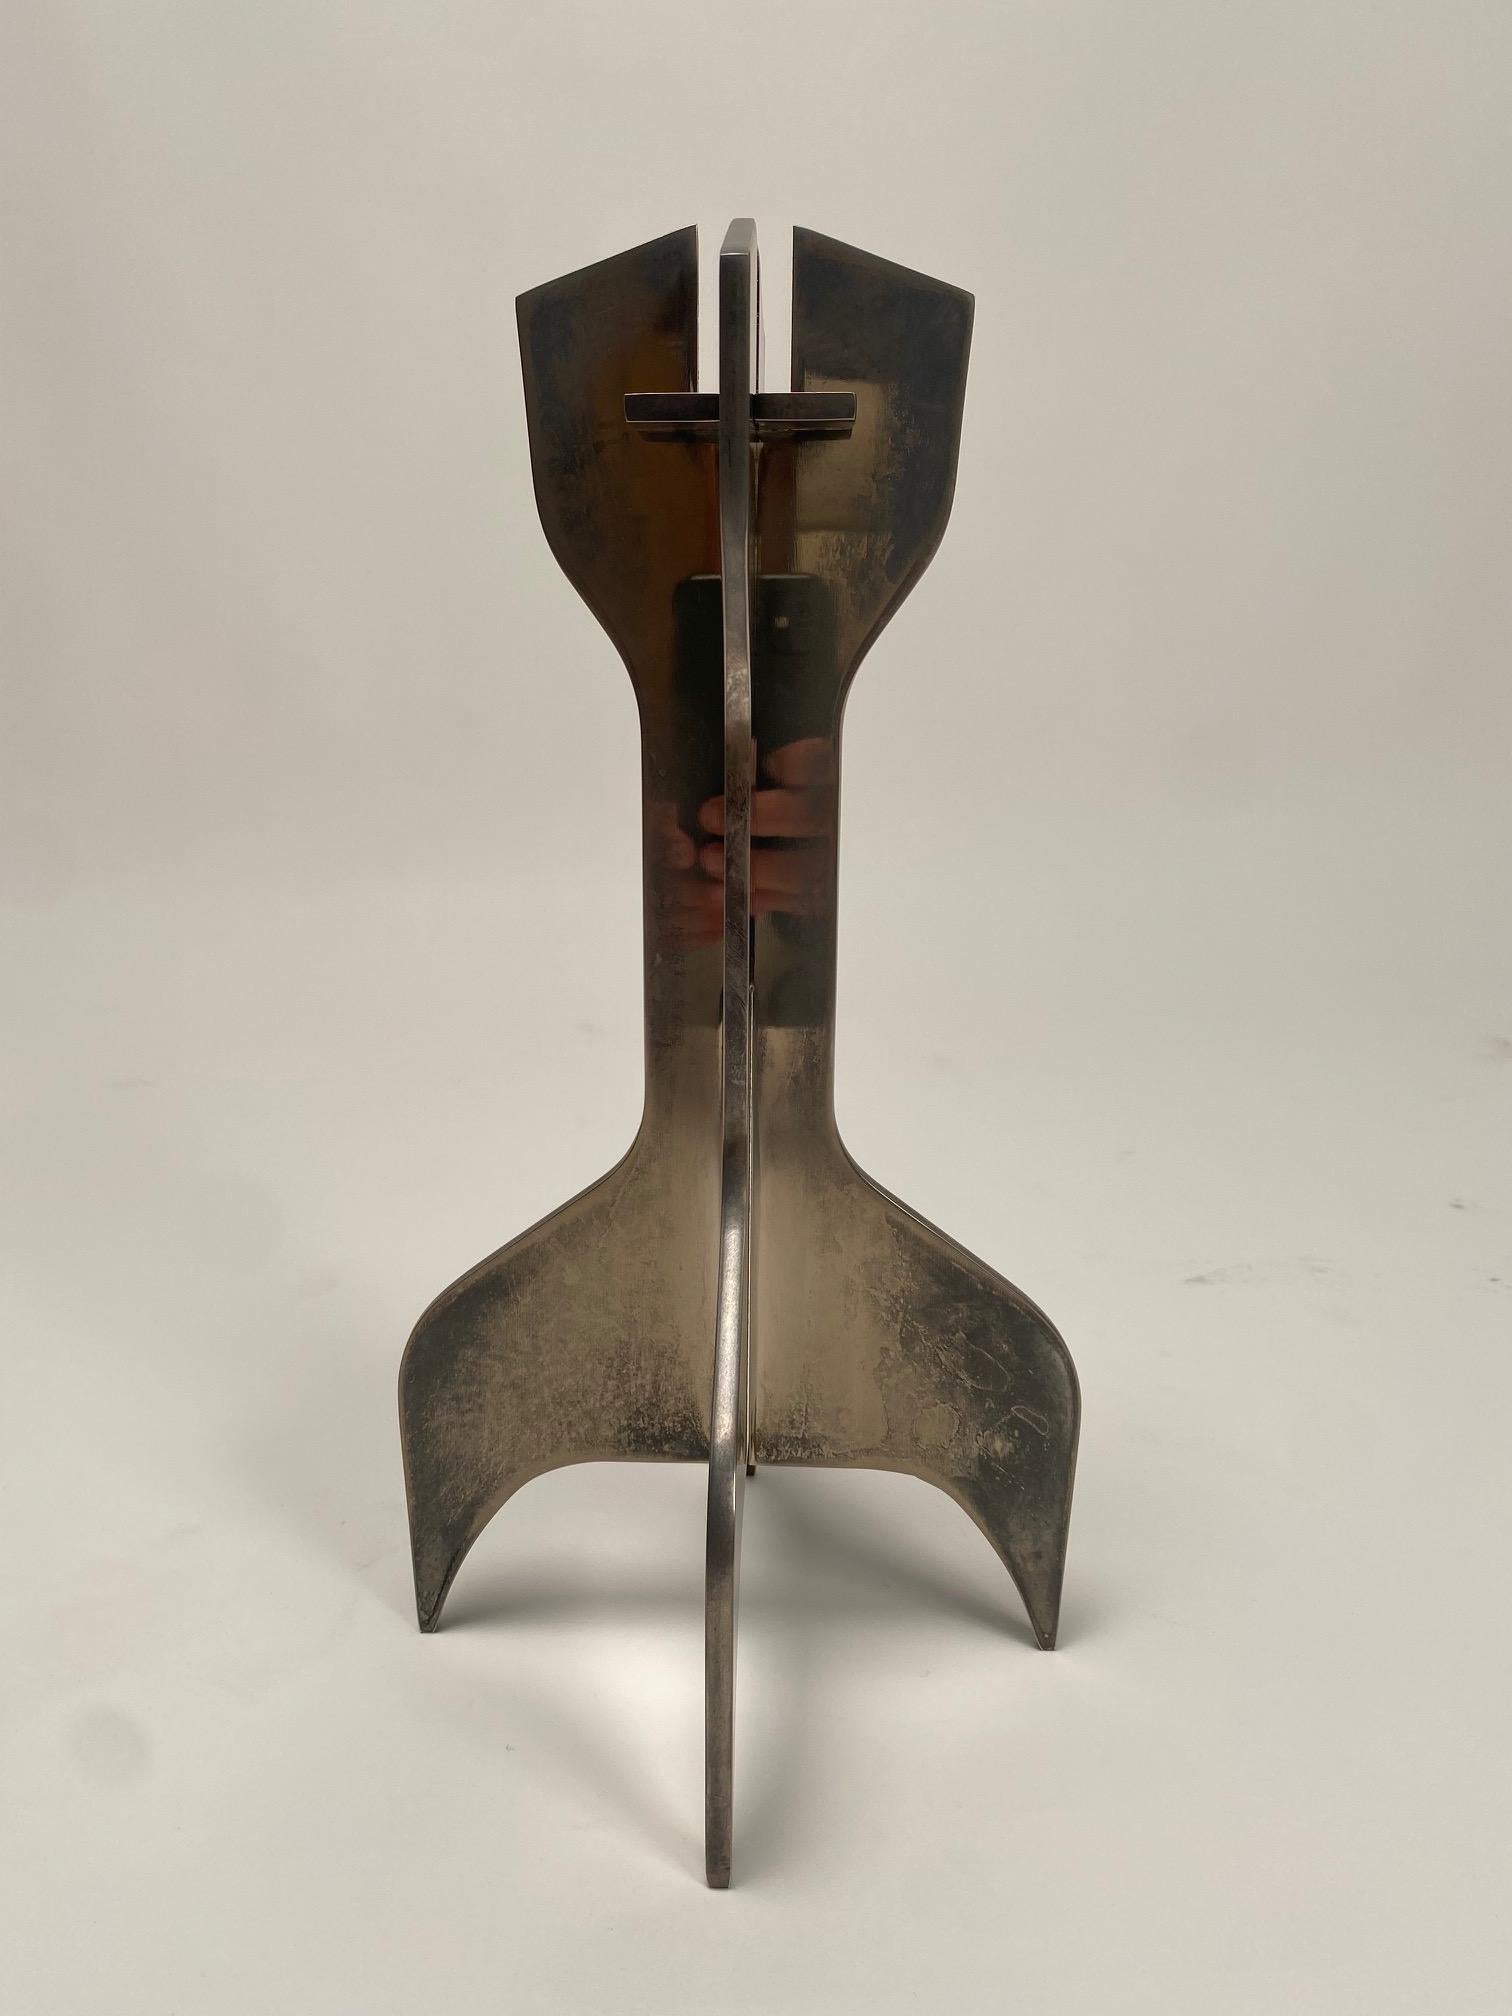 Metallskulpturen von Marcel Breuer, Kerzenhalter für Gavina, 1960 (Bauhaus)